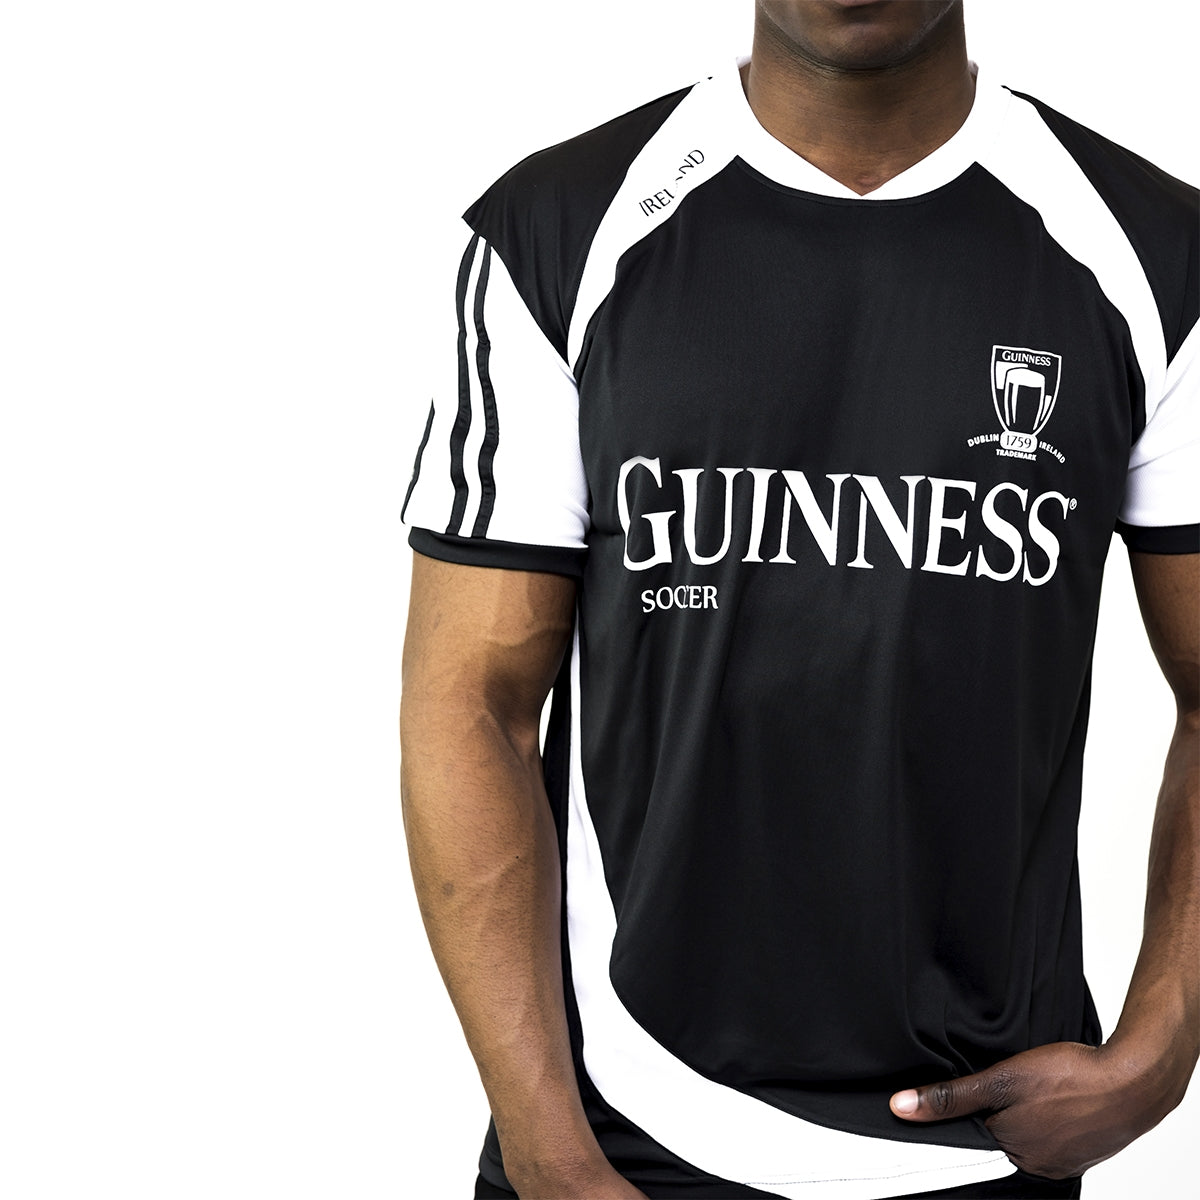 A man wearing a Guinness® Soccer Jersey.